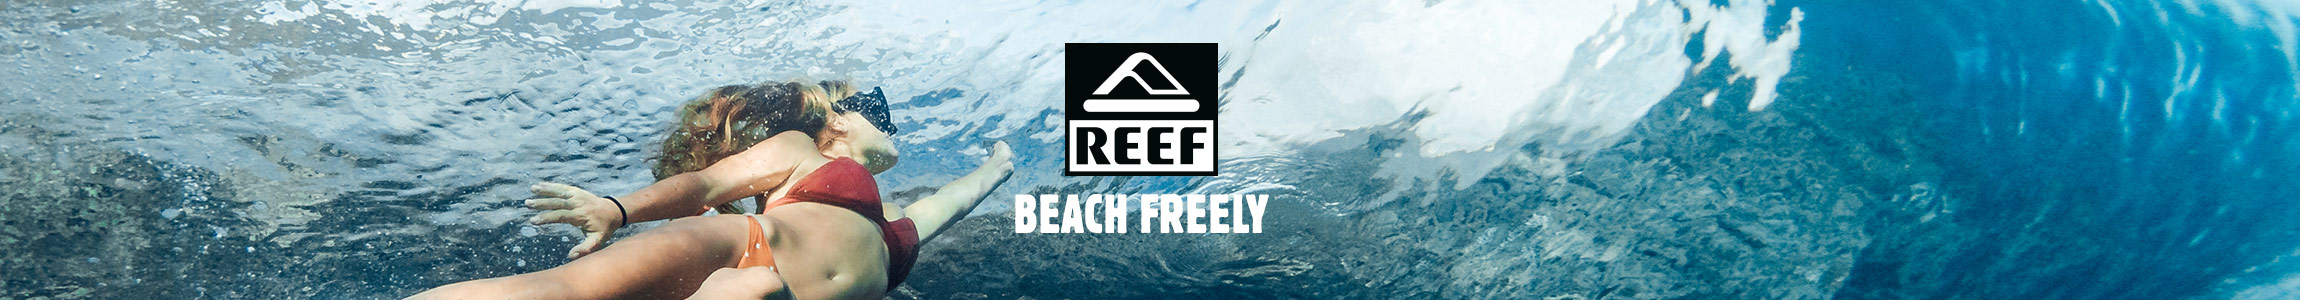 Reef Sandalen für den Sommer bei Tigersports.de